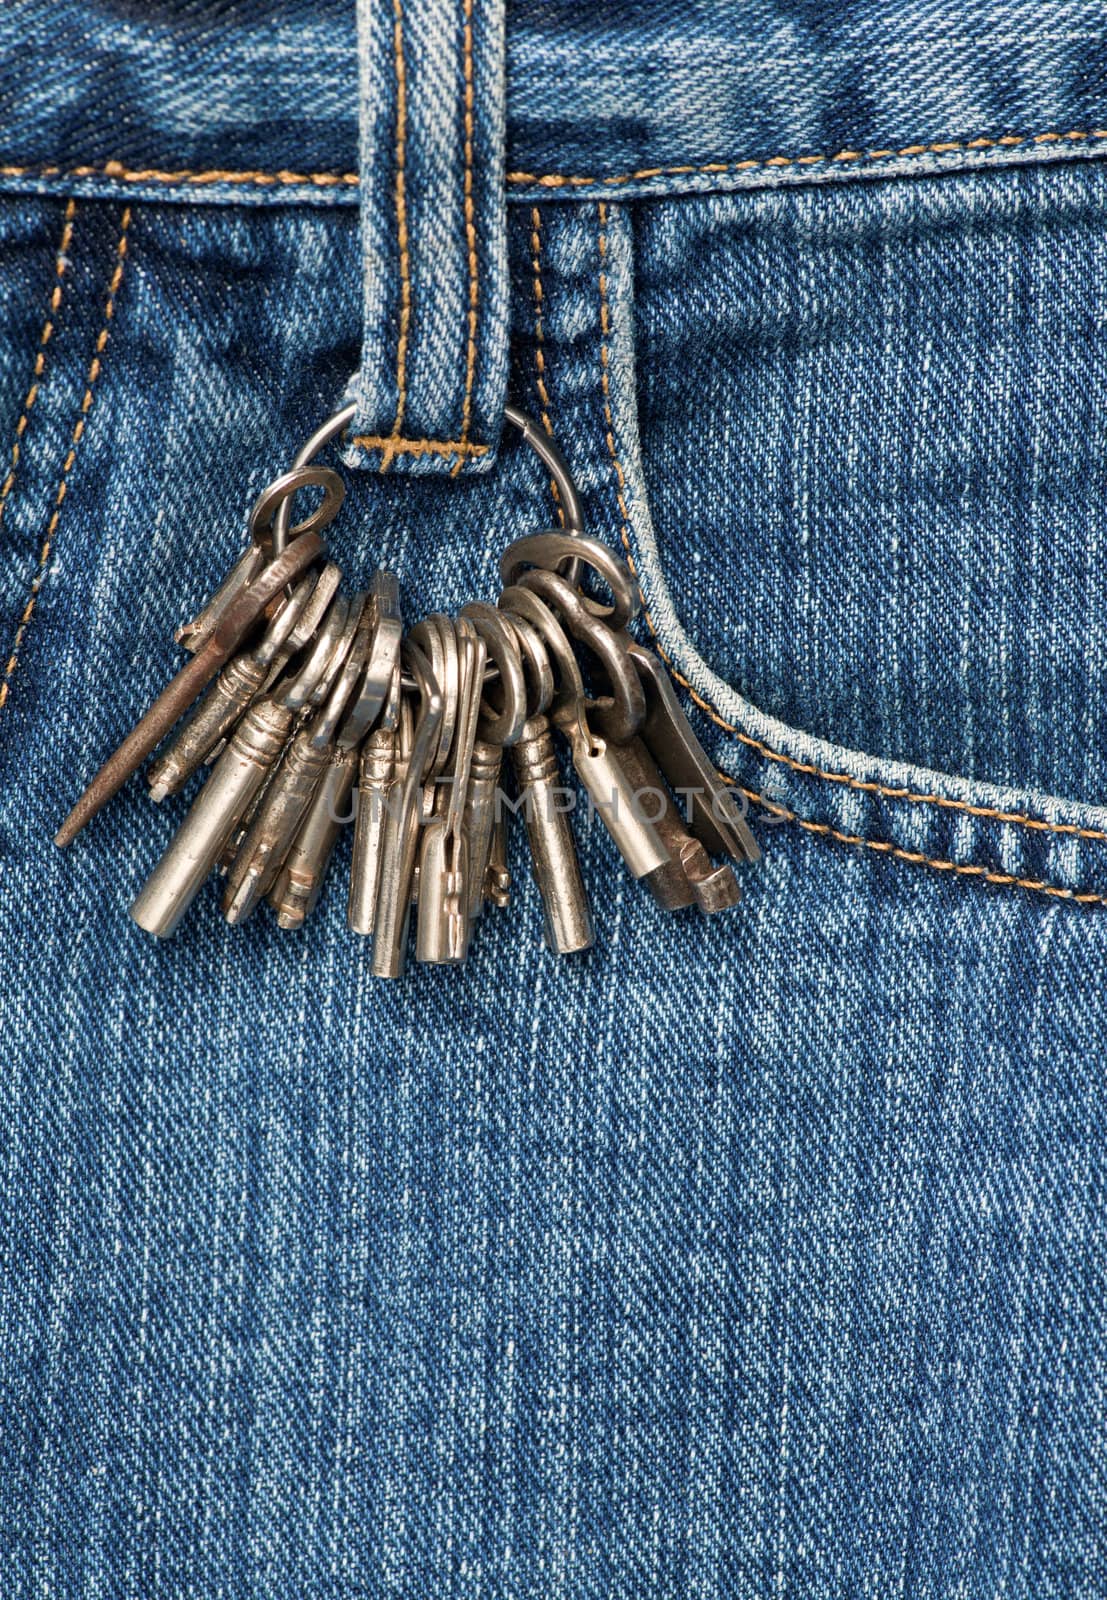 Keys on jeans by naumoid